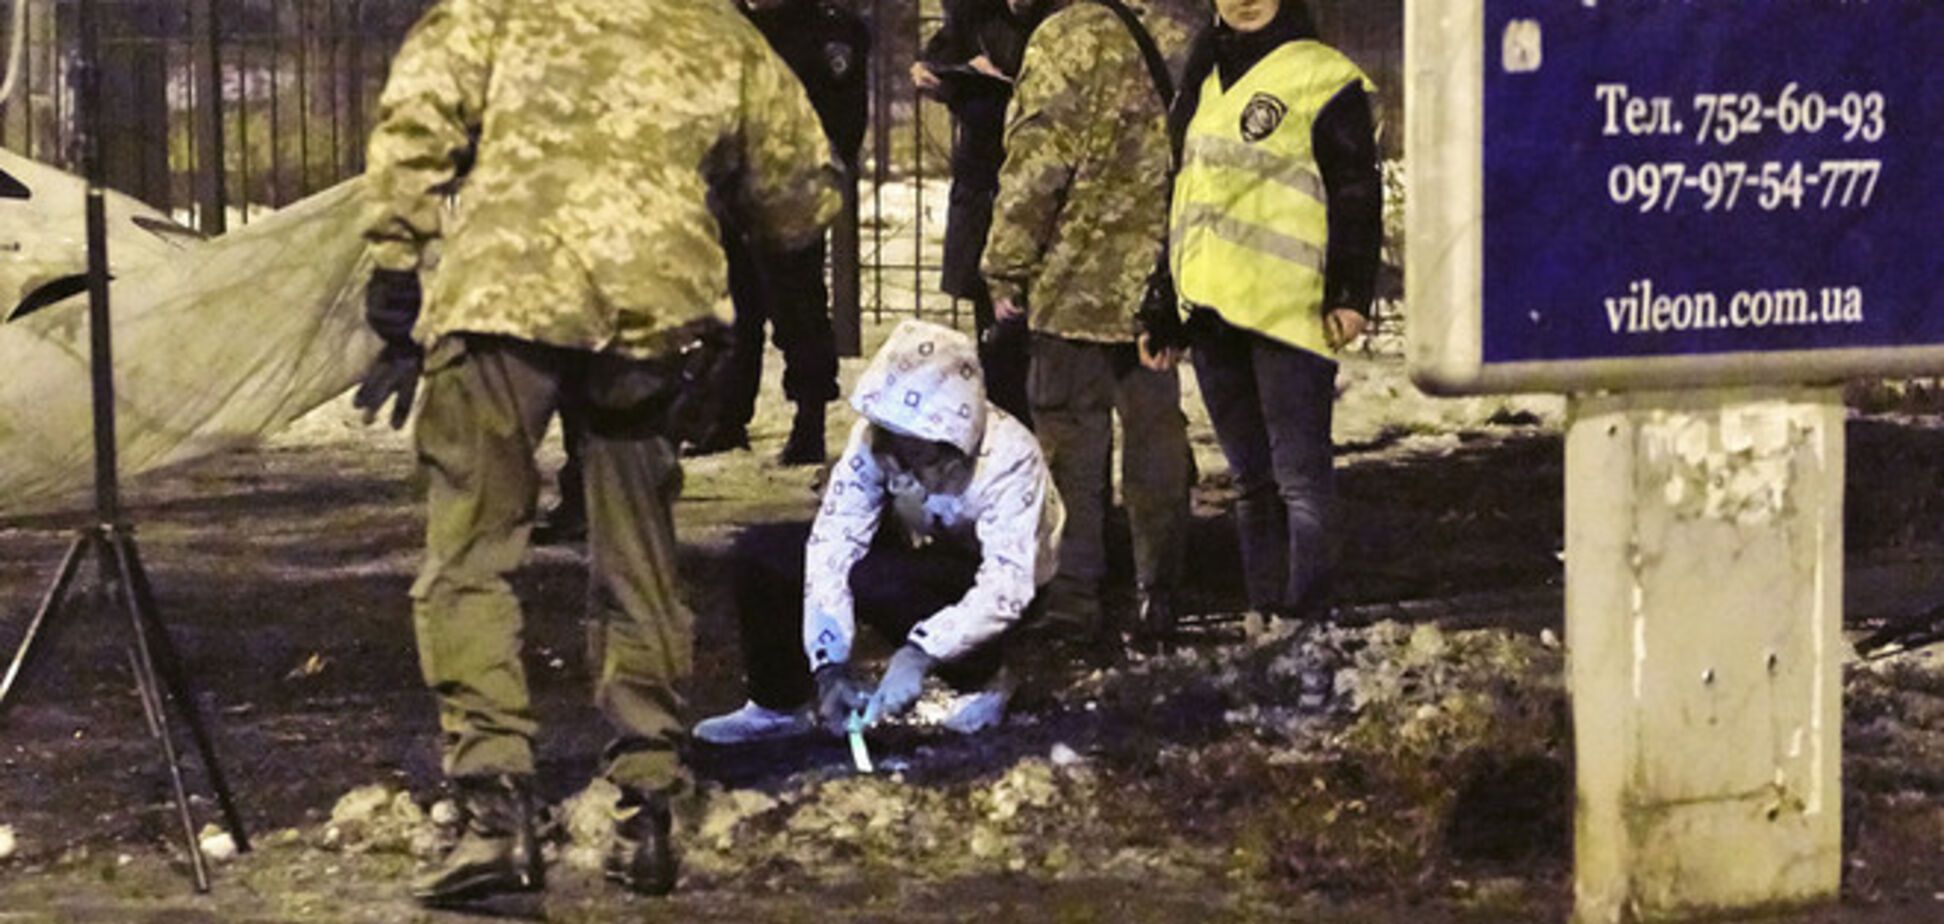 Ветеран спецназа назвал цель терактов в Украине: взрыв можно подготовить за полчаса